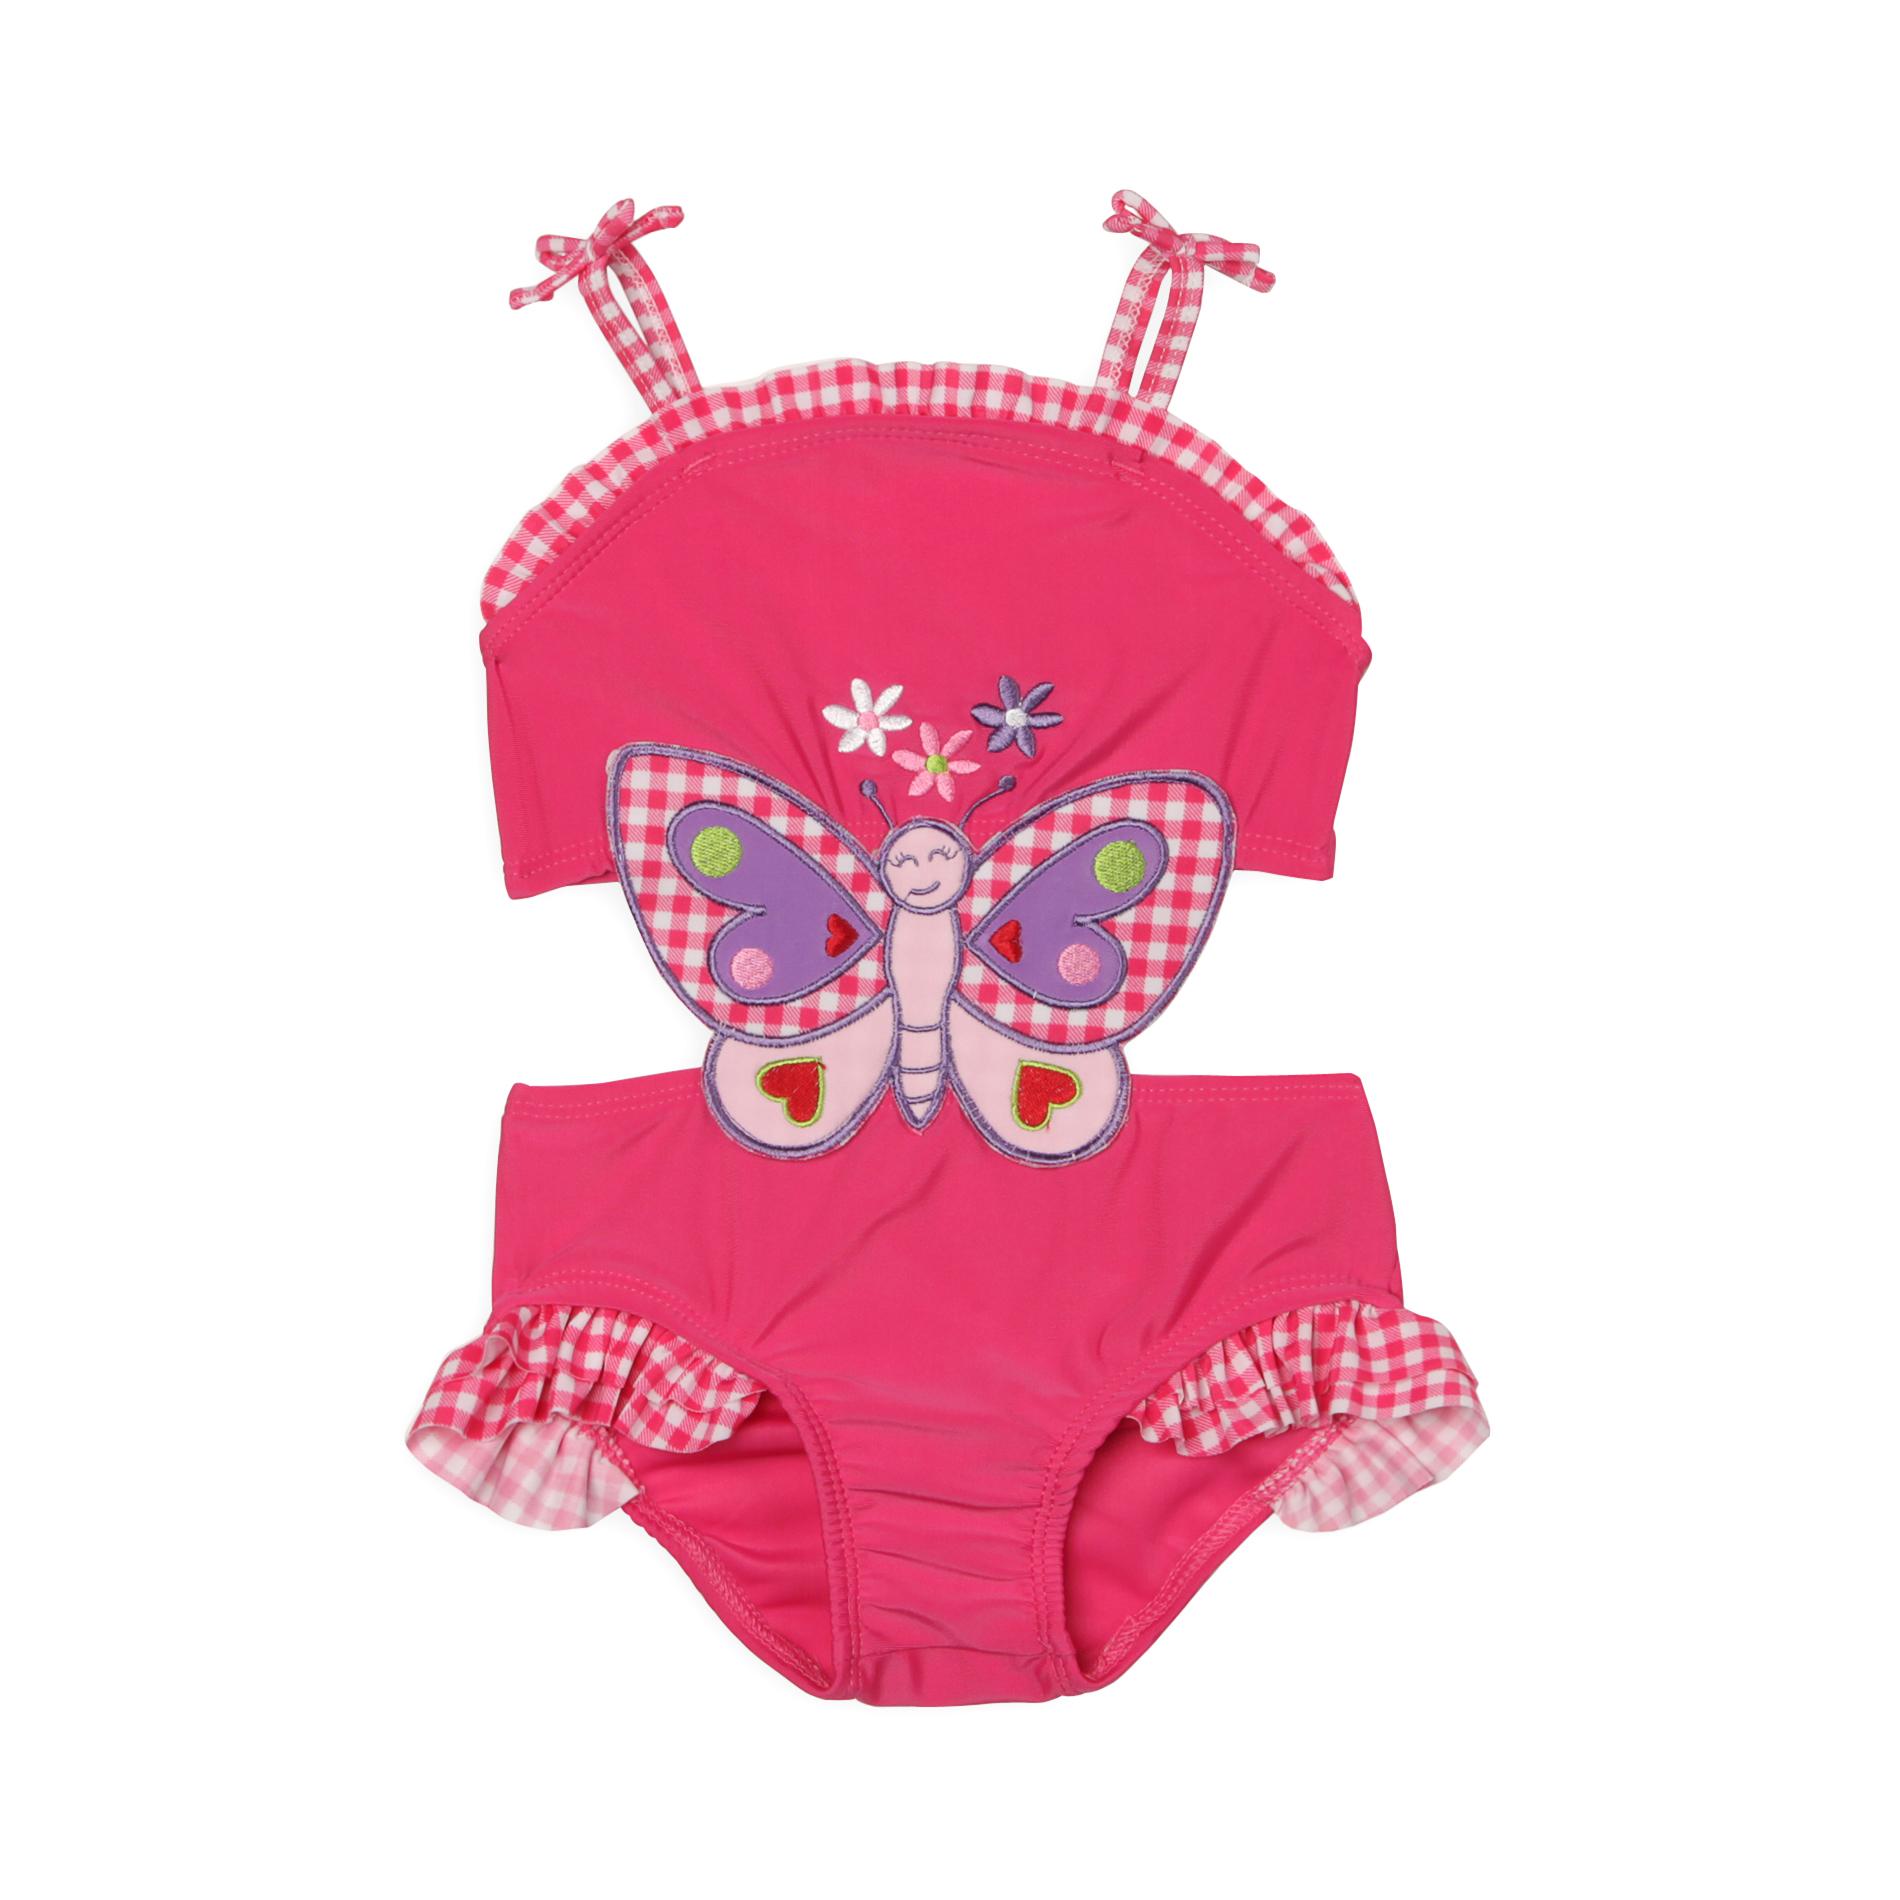 Joe Boxer Infant & Toddler Girl's Monokini Swimsuit - Butterfly & Gingham